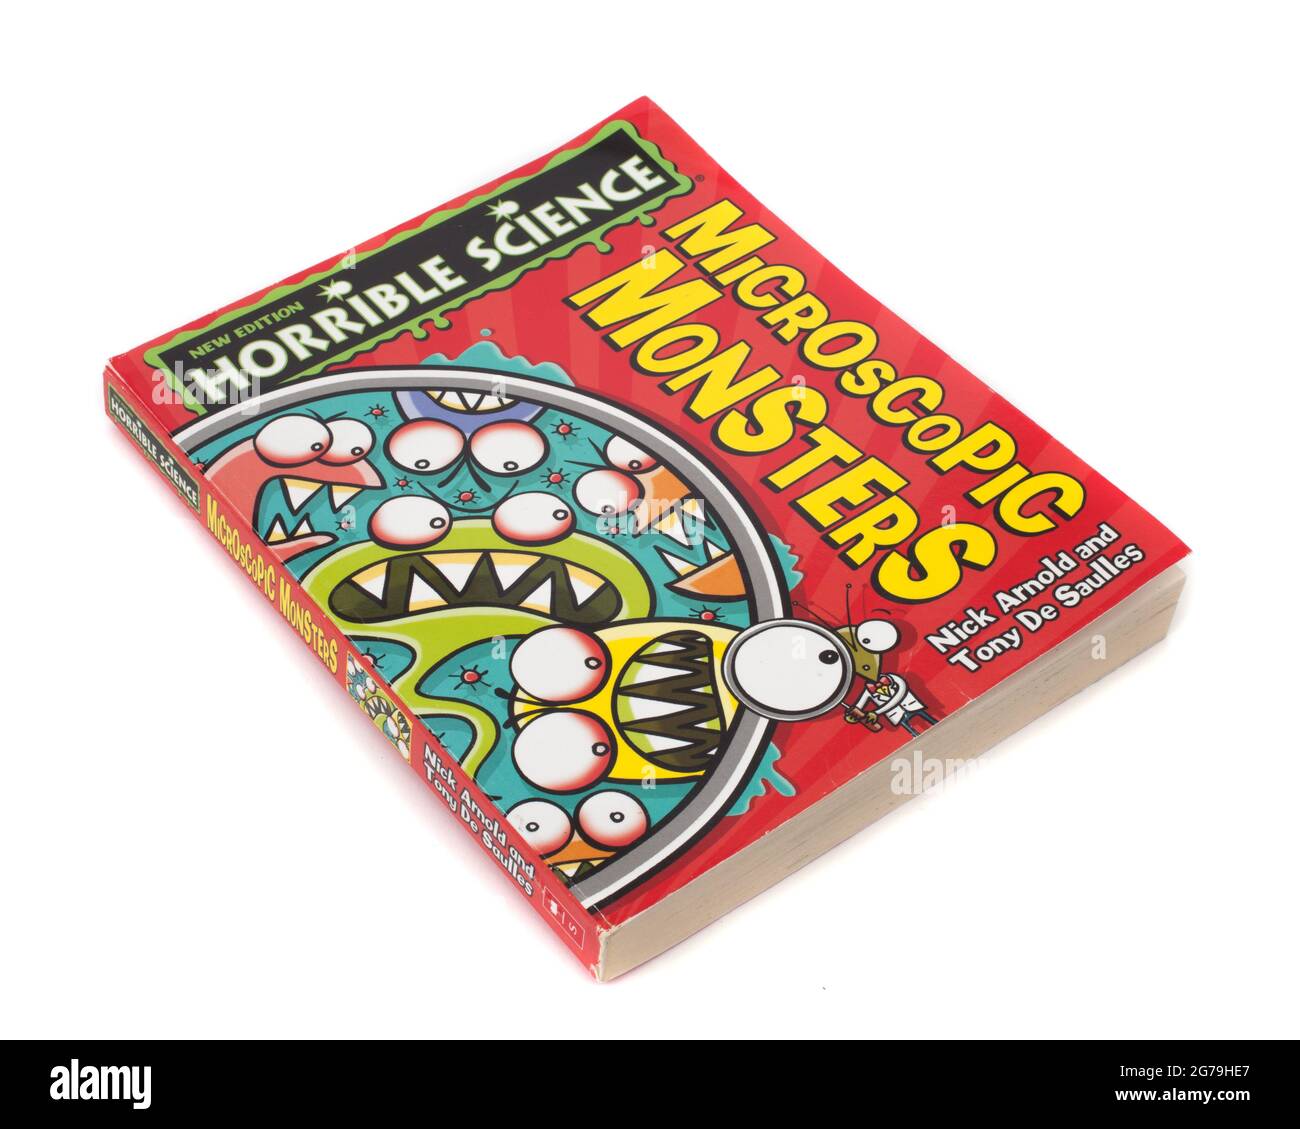 Il libro, horrible Science, Microscopic Monsters di Nick Arnold e Tony De Saulles Foto Stock